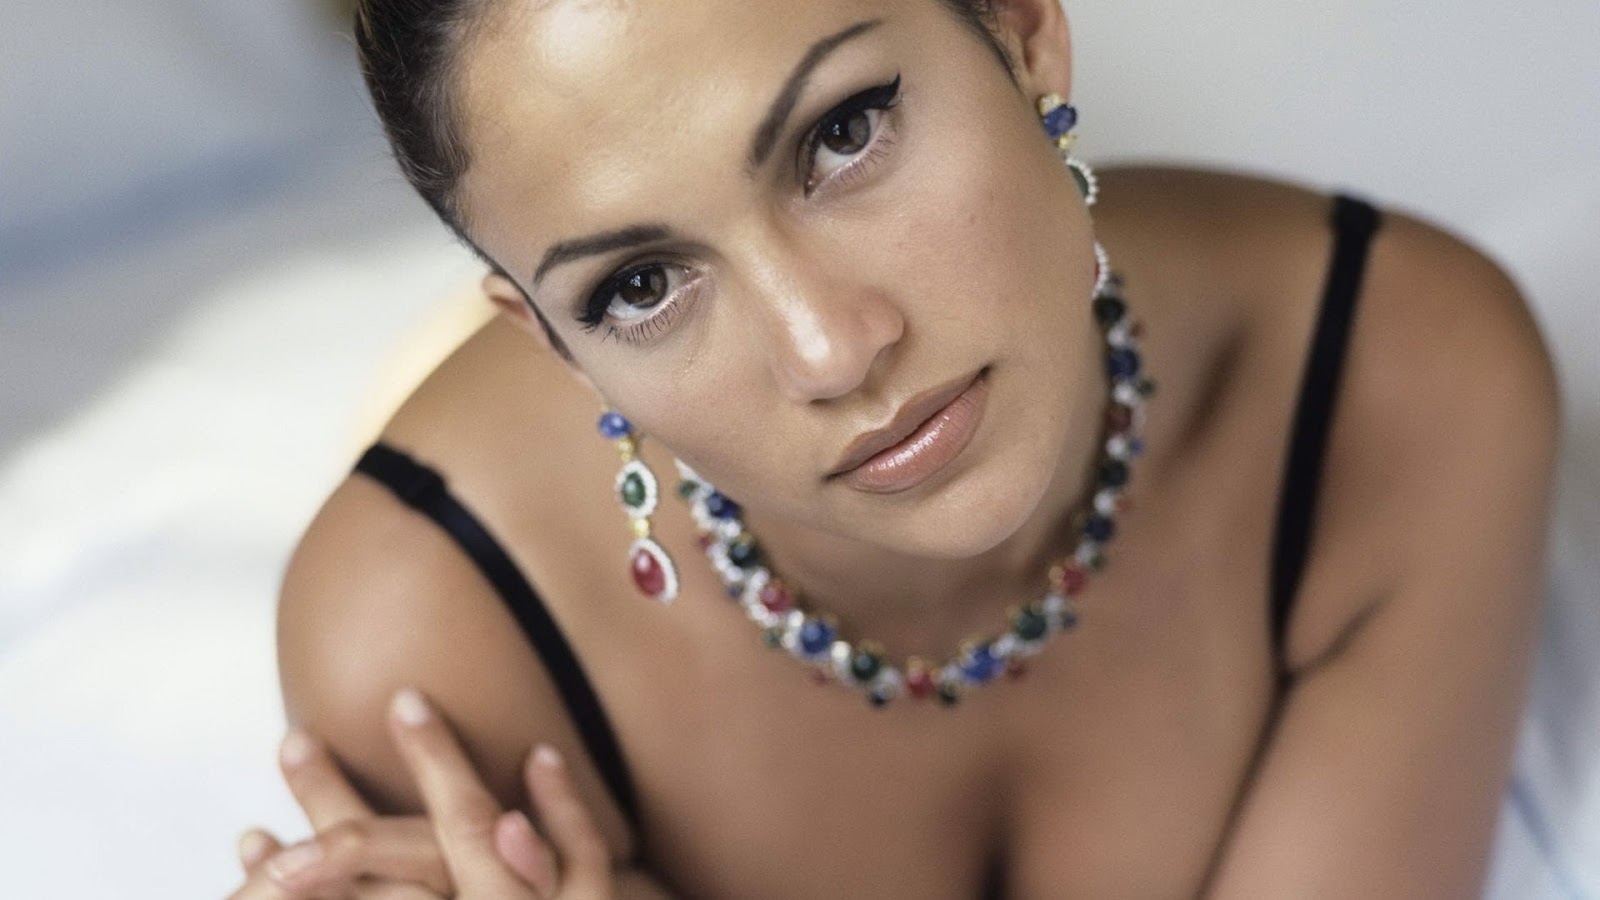 http://4.bp.blogspot.com/--y8im7teRnQ/T456t_SnB3I/AAAAAAAAB4Q/h4MqAEwB9vU/s1600/Jennifer-Lopez-Hot-Sexy-Hd-Wallpapers-10.jpg